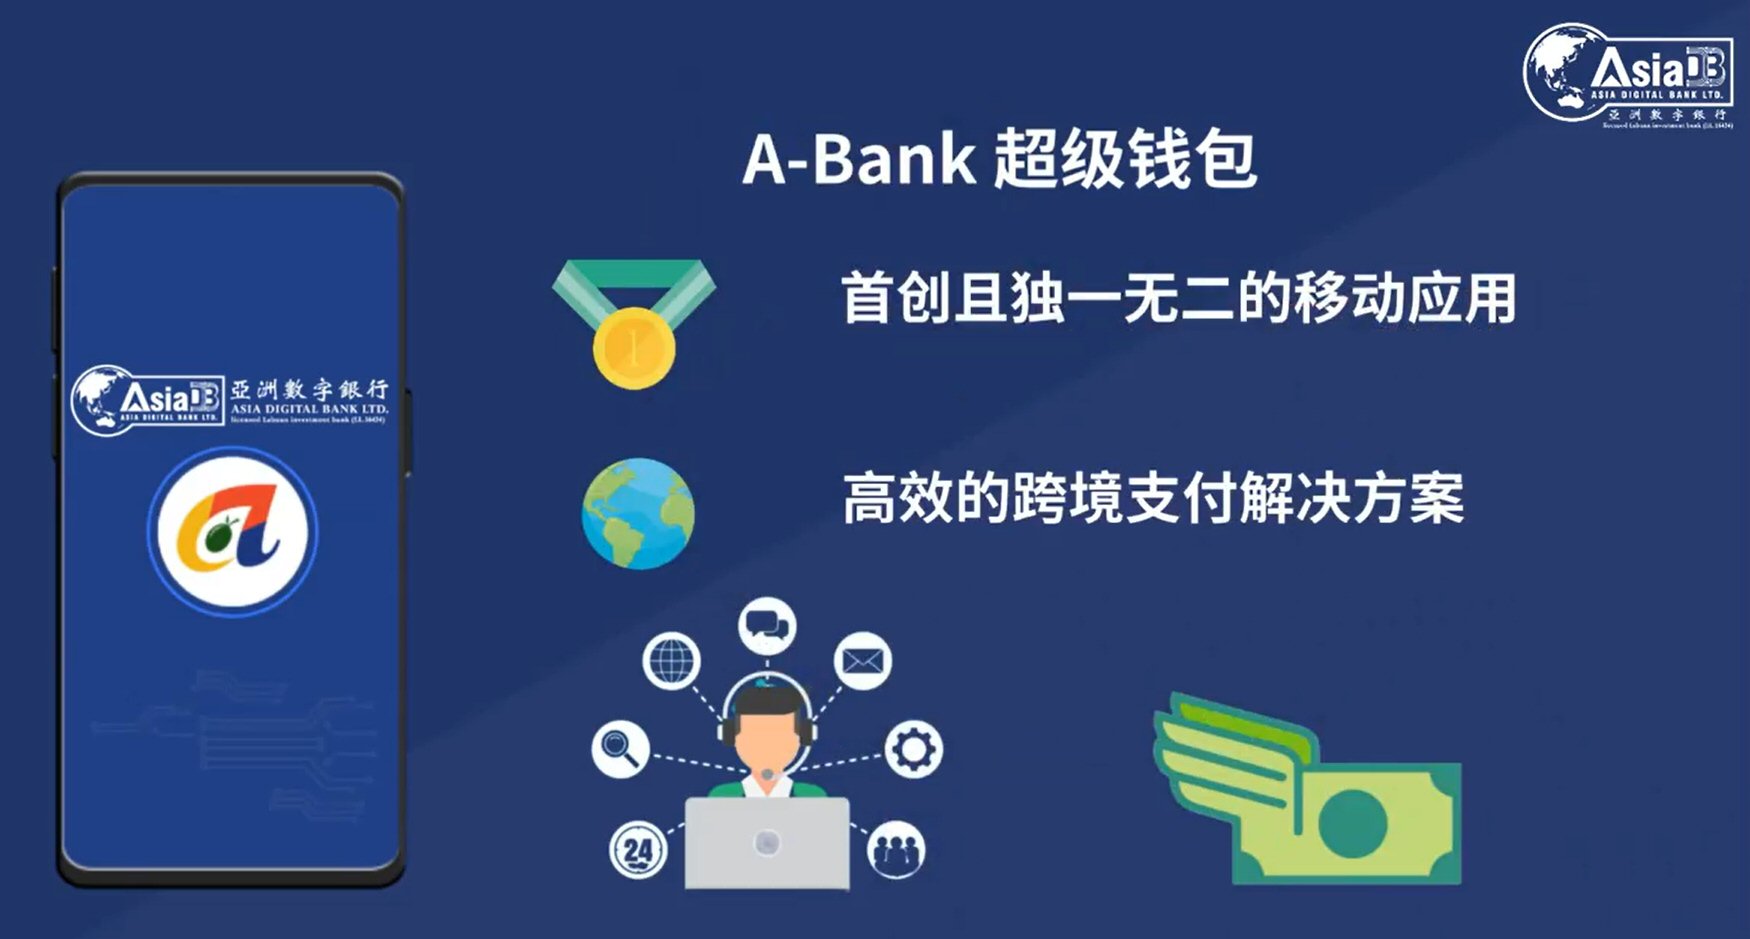 A-Bank Super Wallet